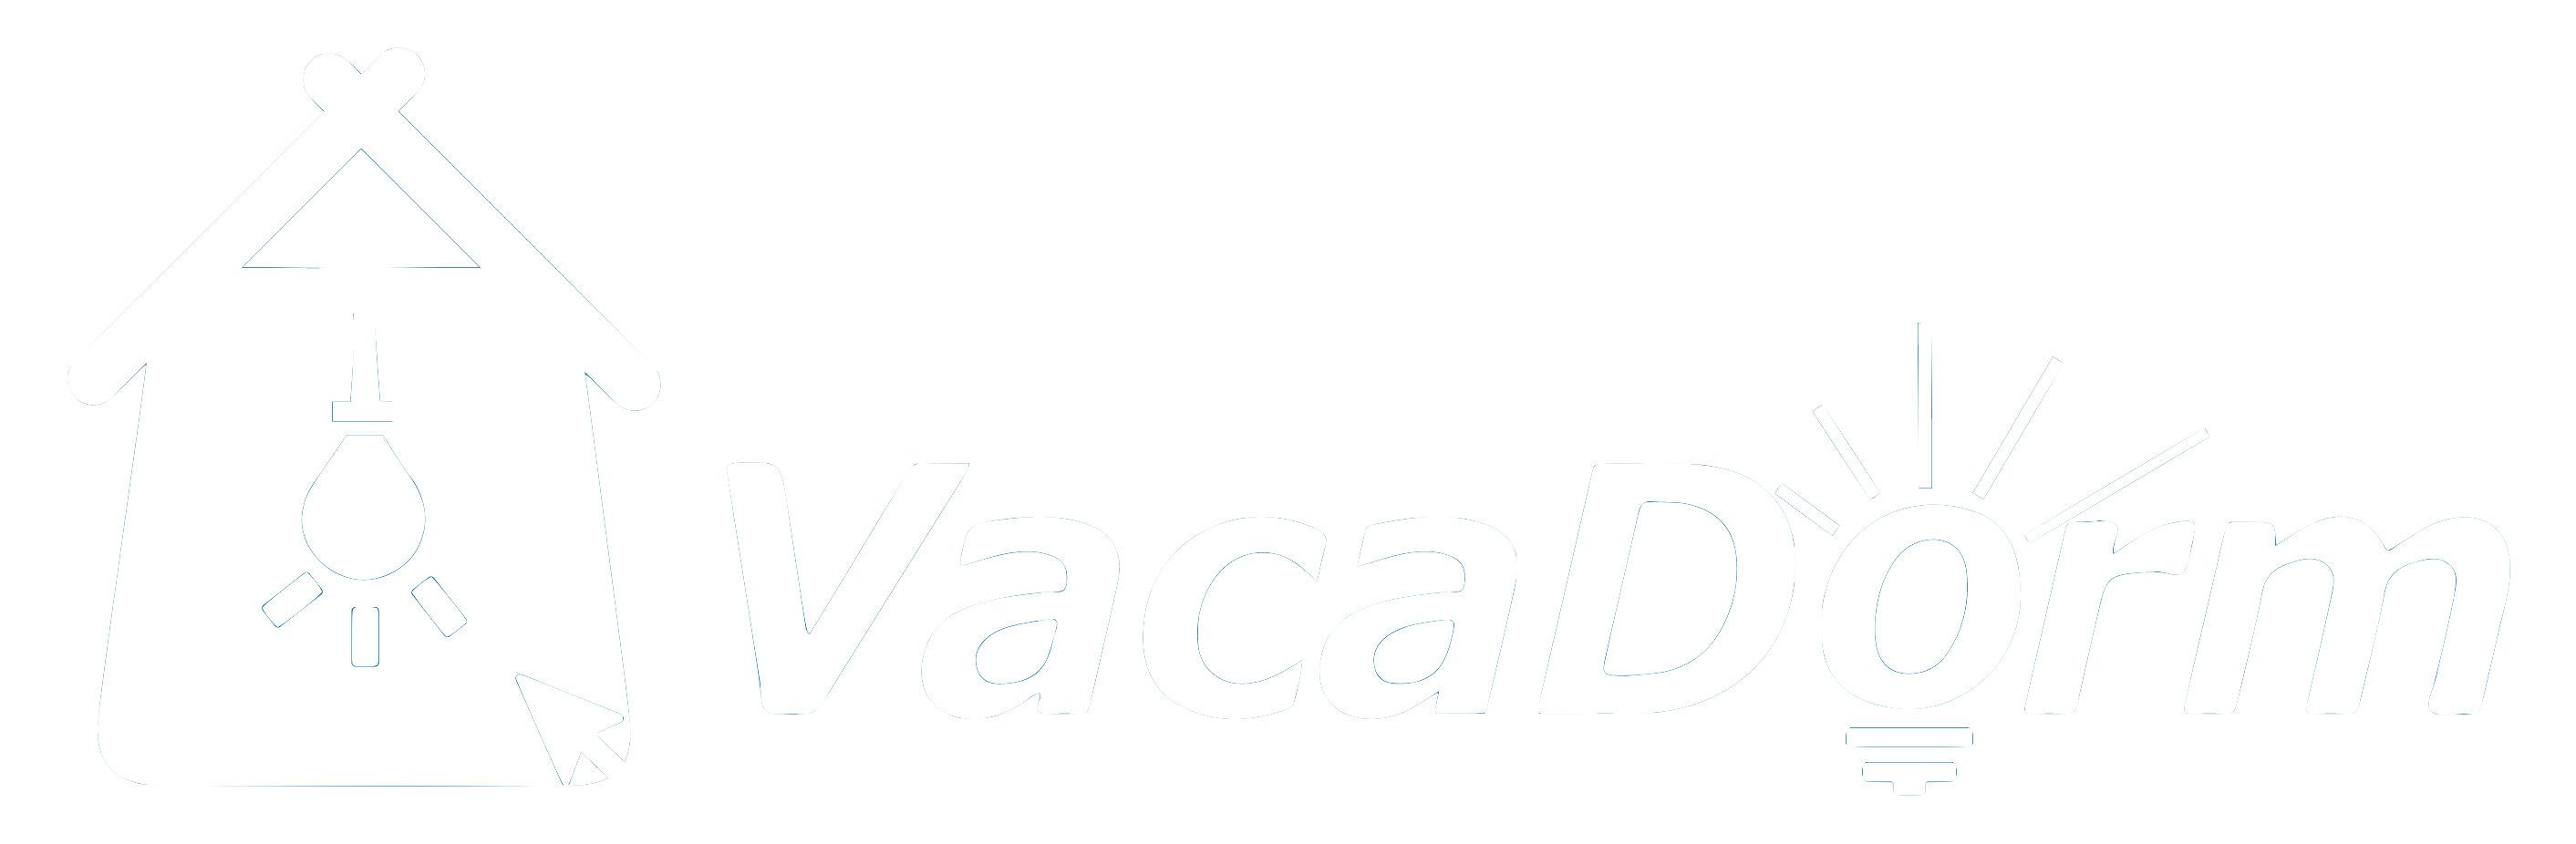 VacaDorm